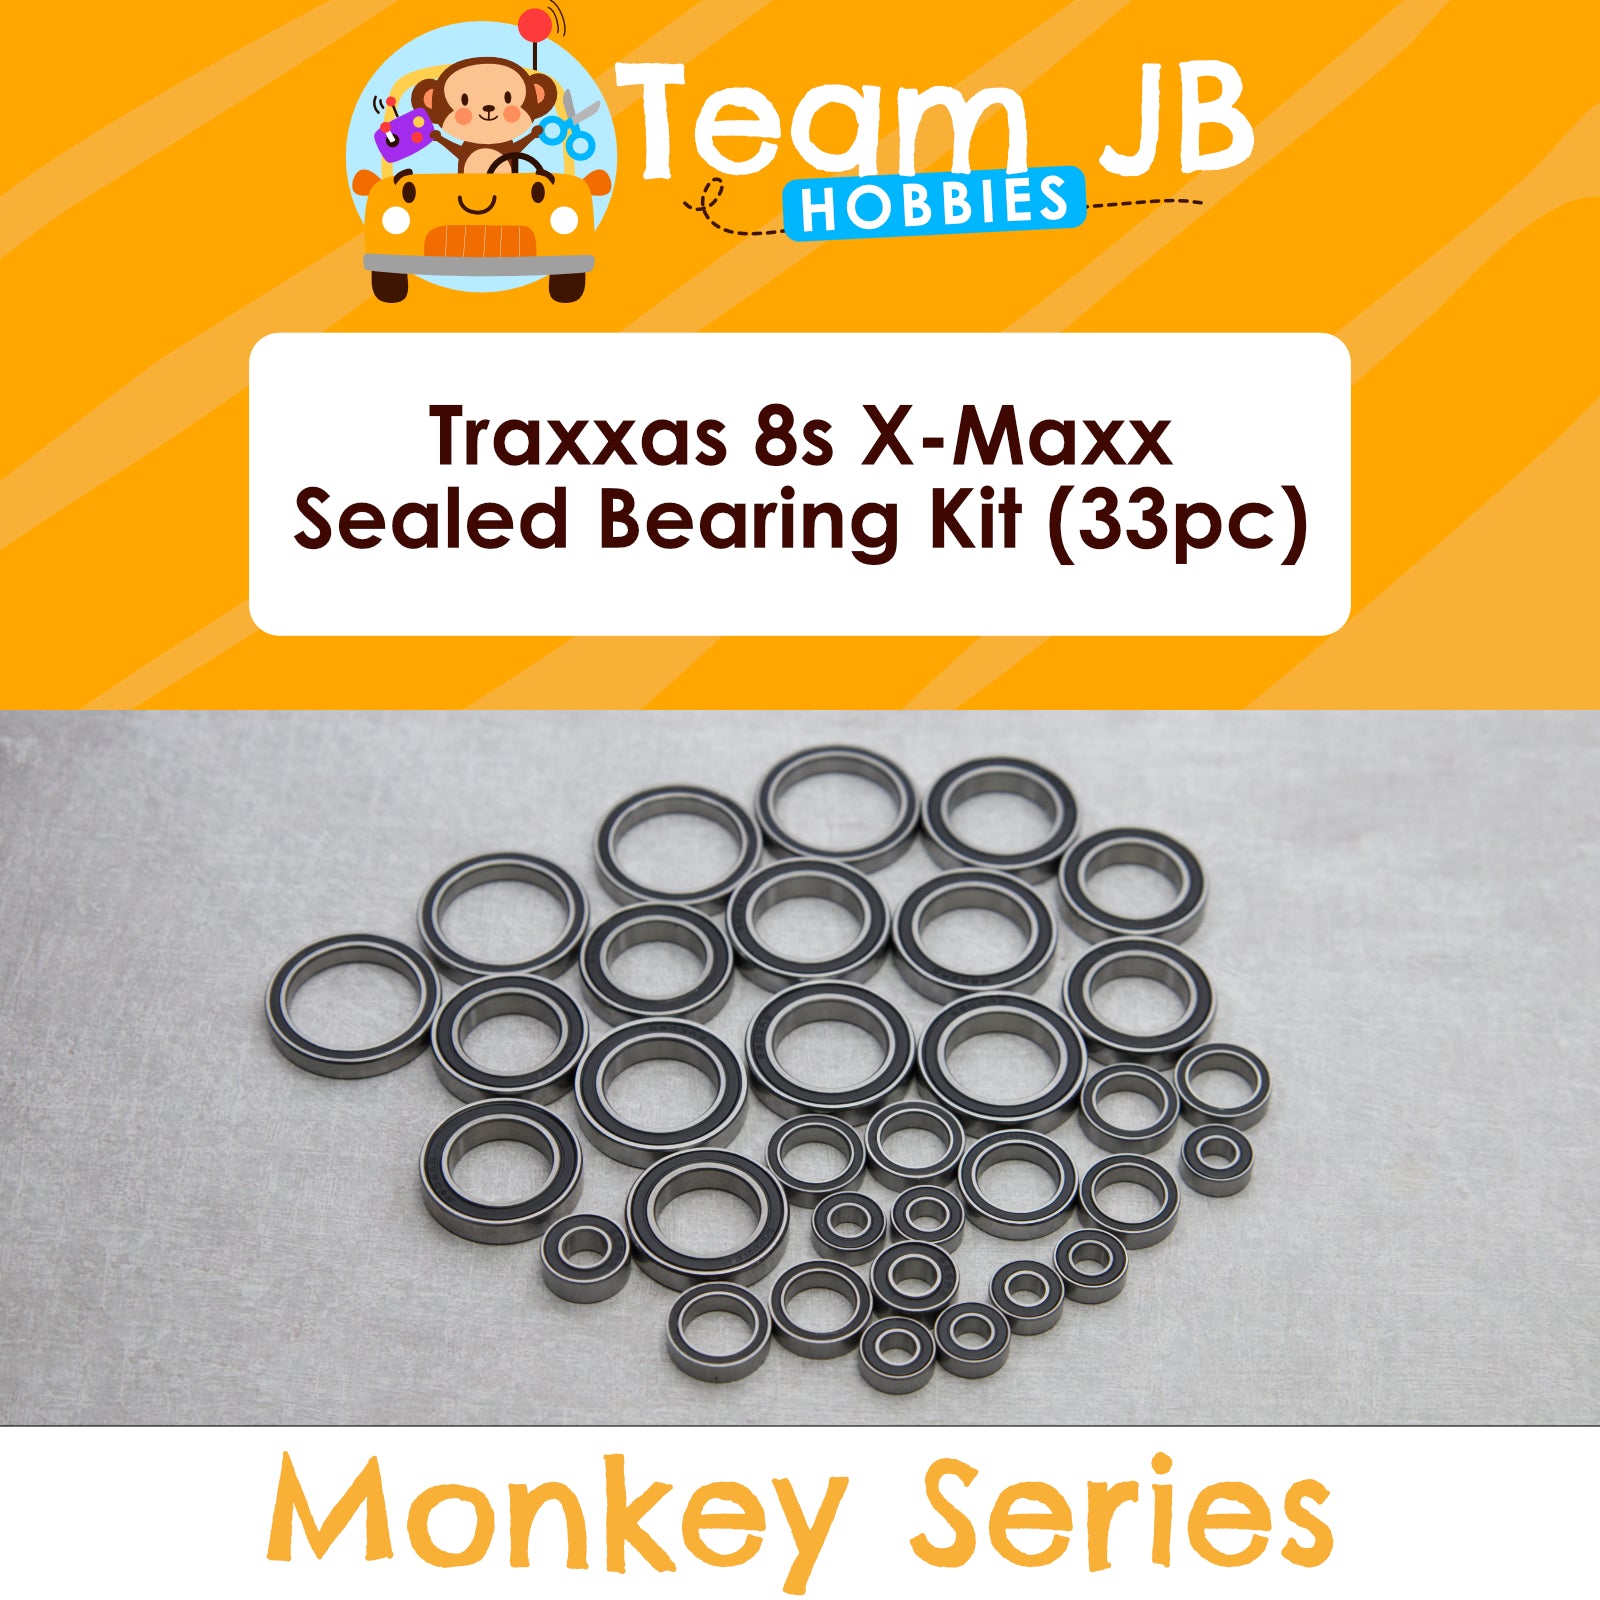 Traxxas 8s X-Maxx - Sealed Bearing Kit